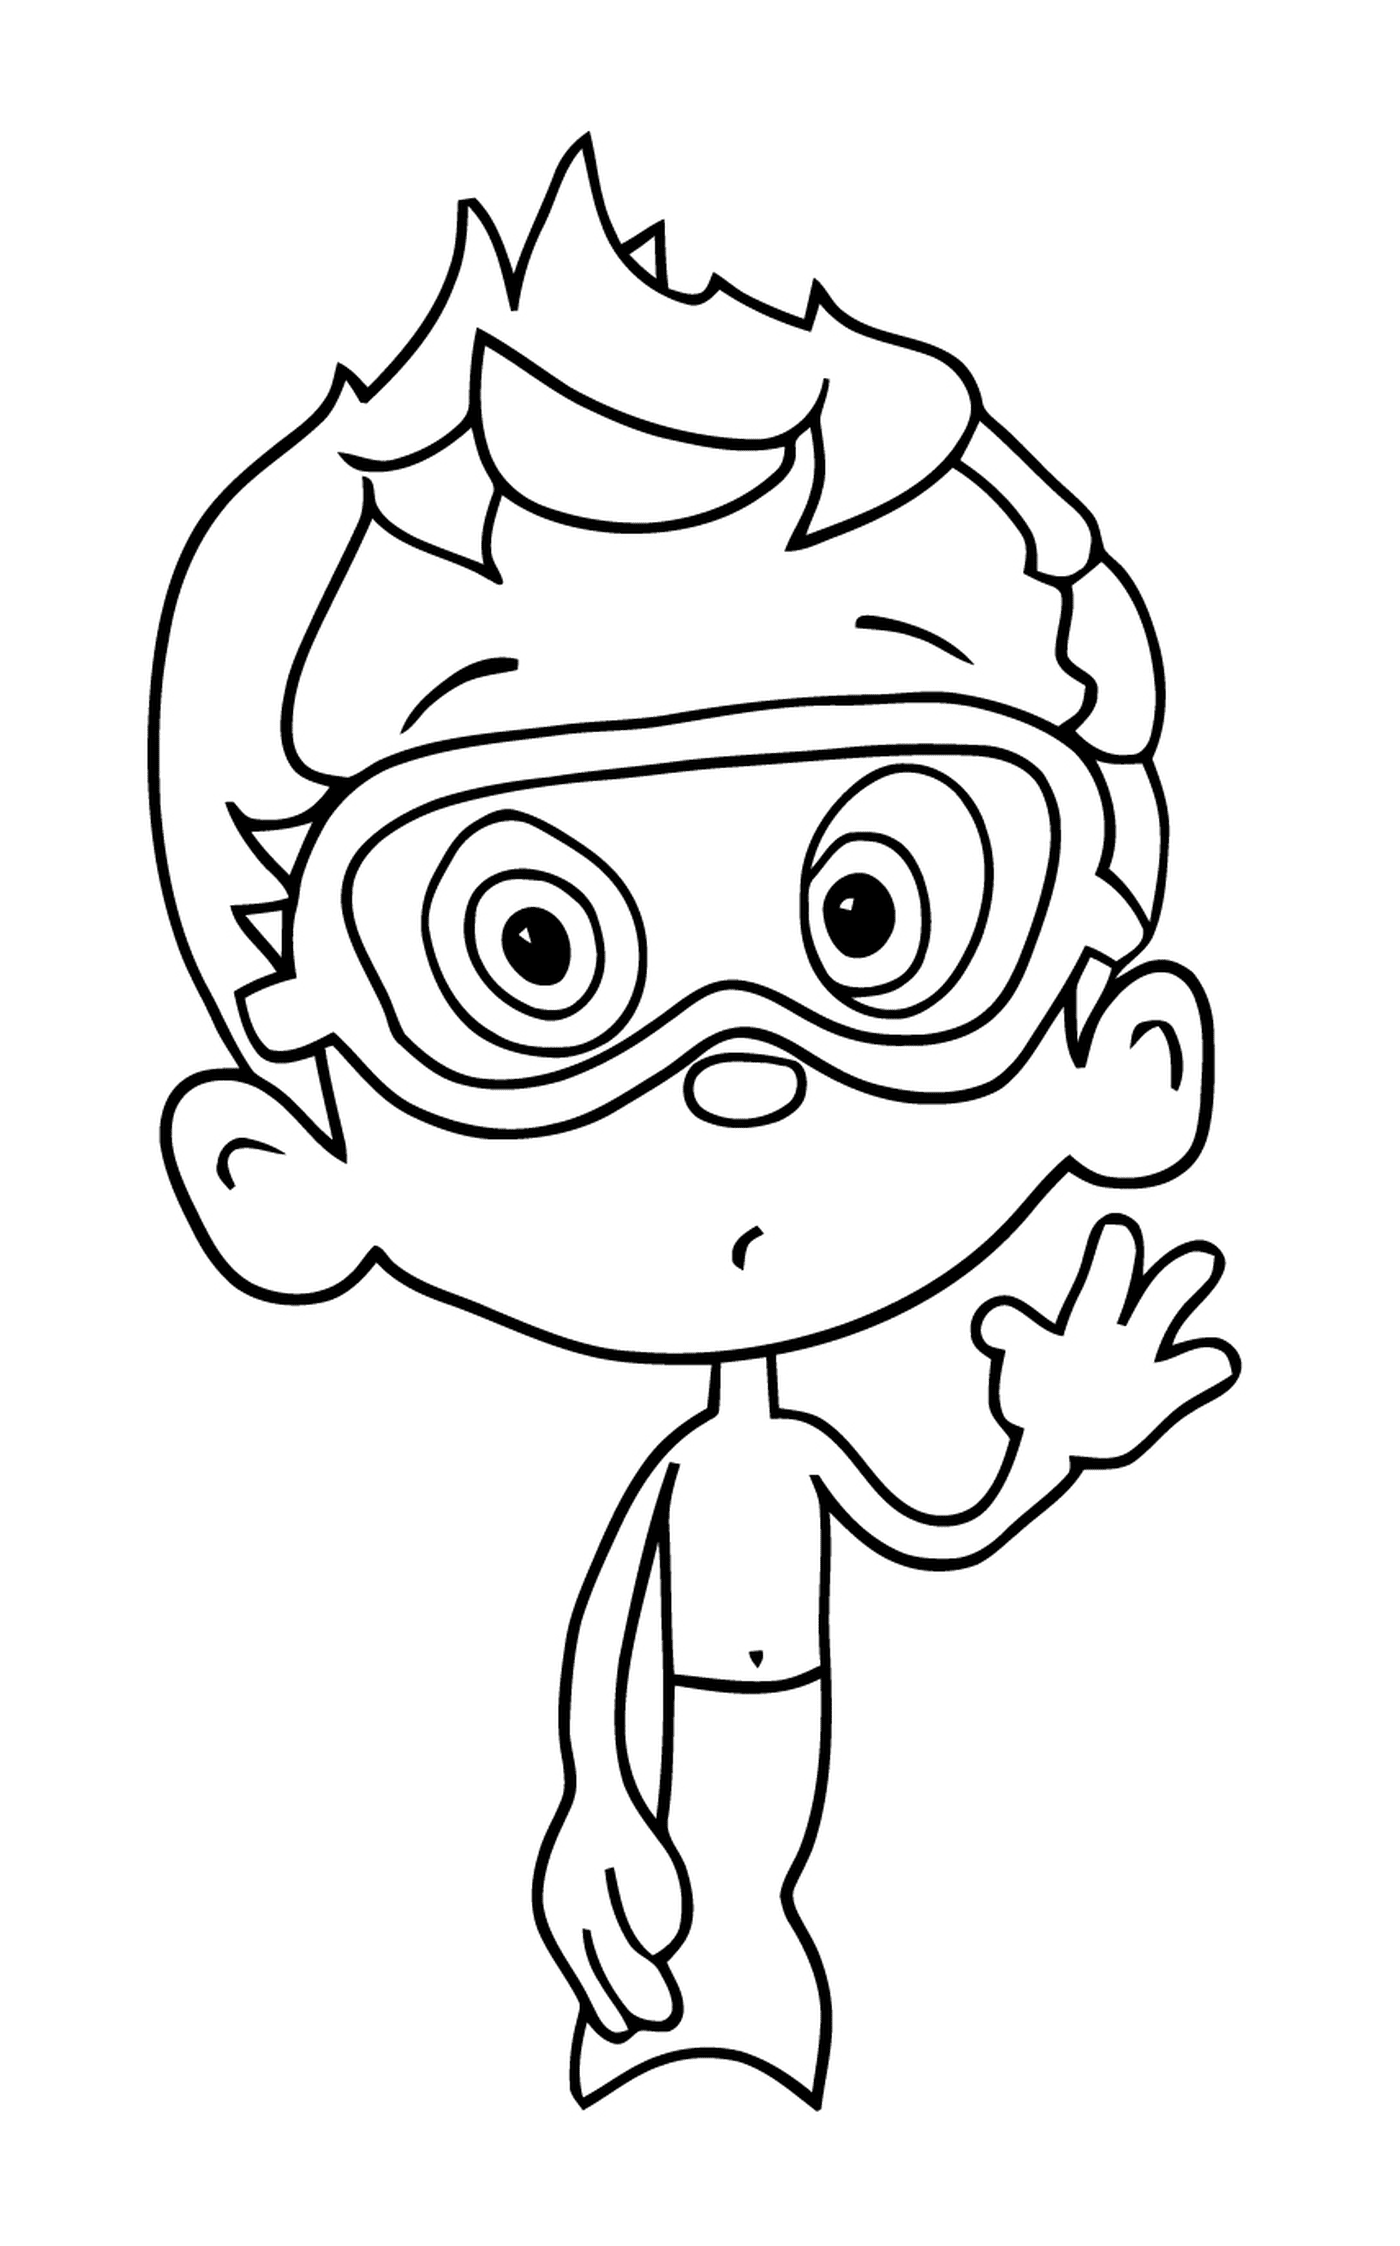  Ein Junge trägt eine Tauchbrille 